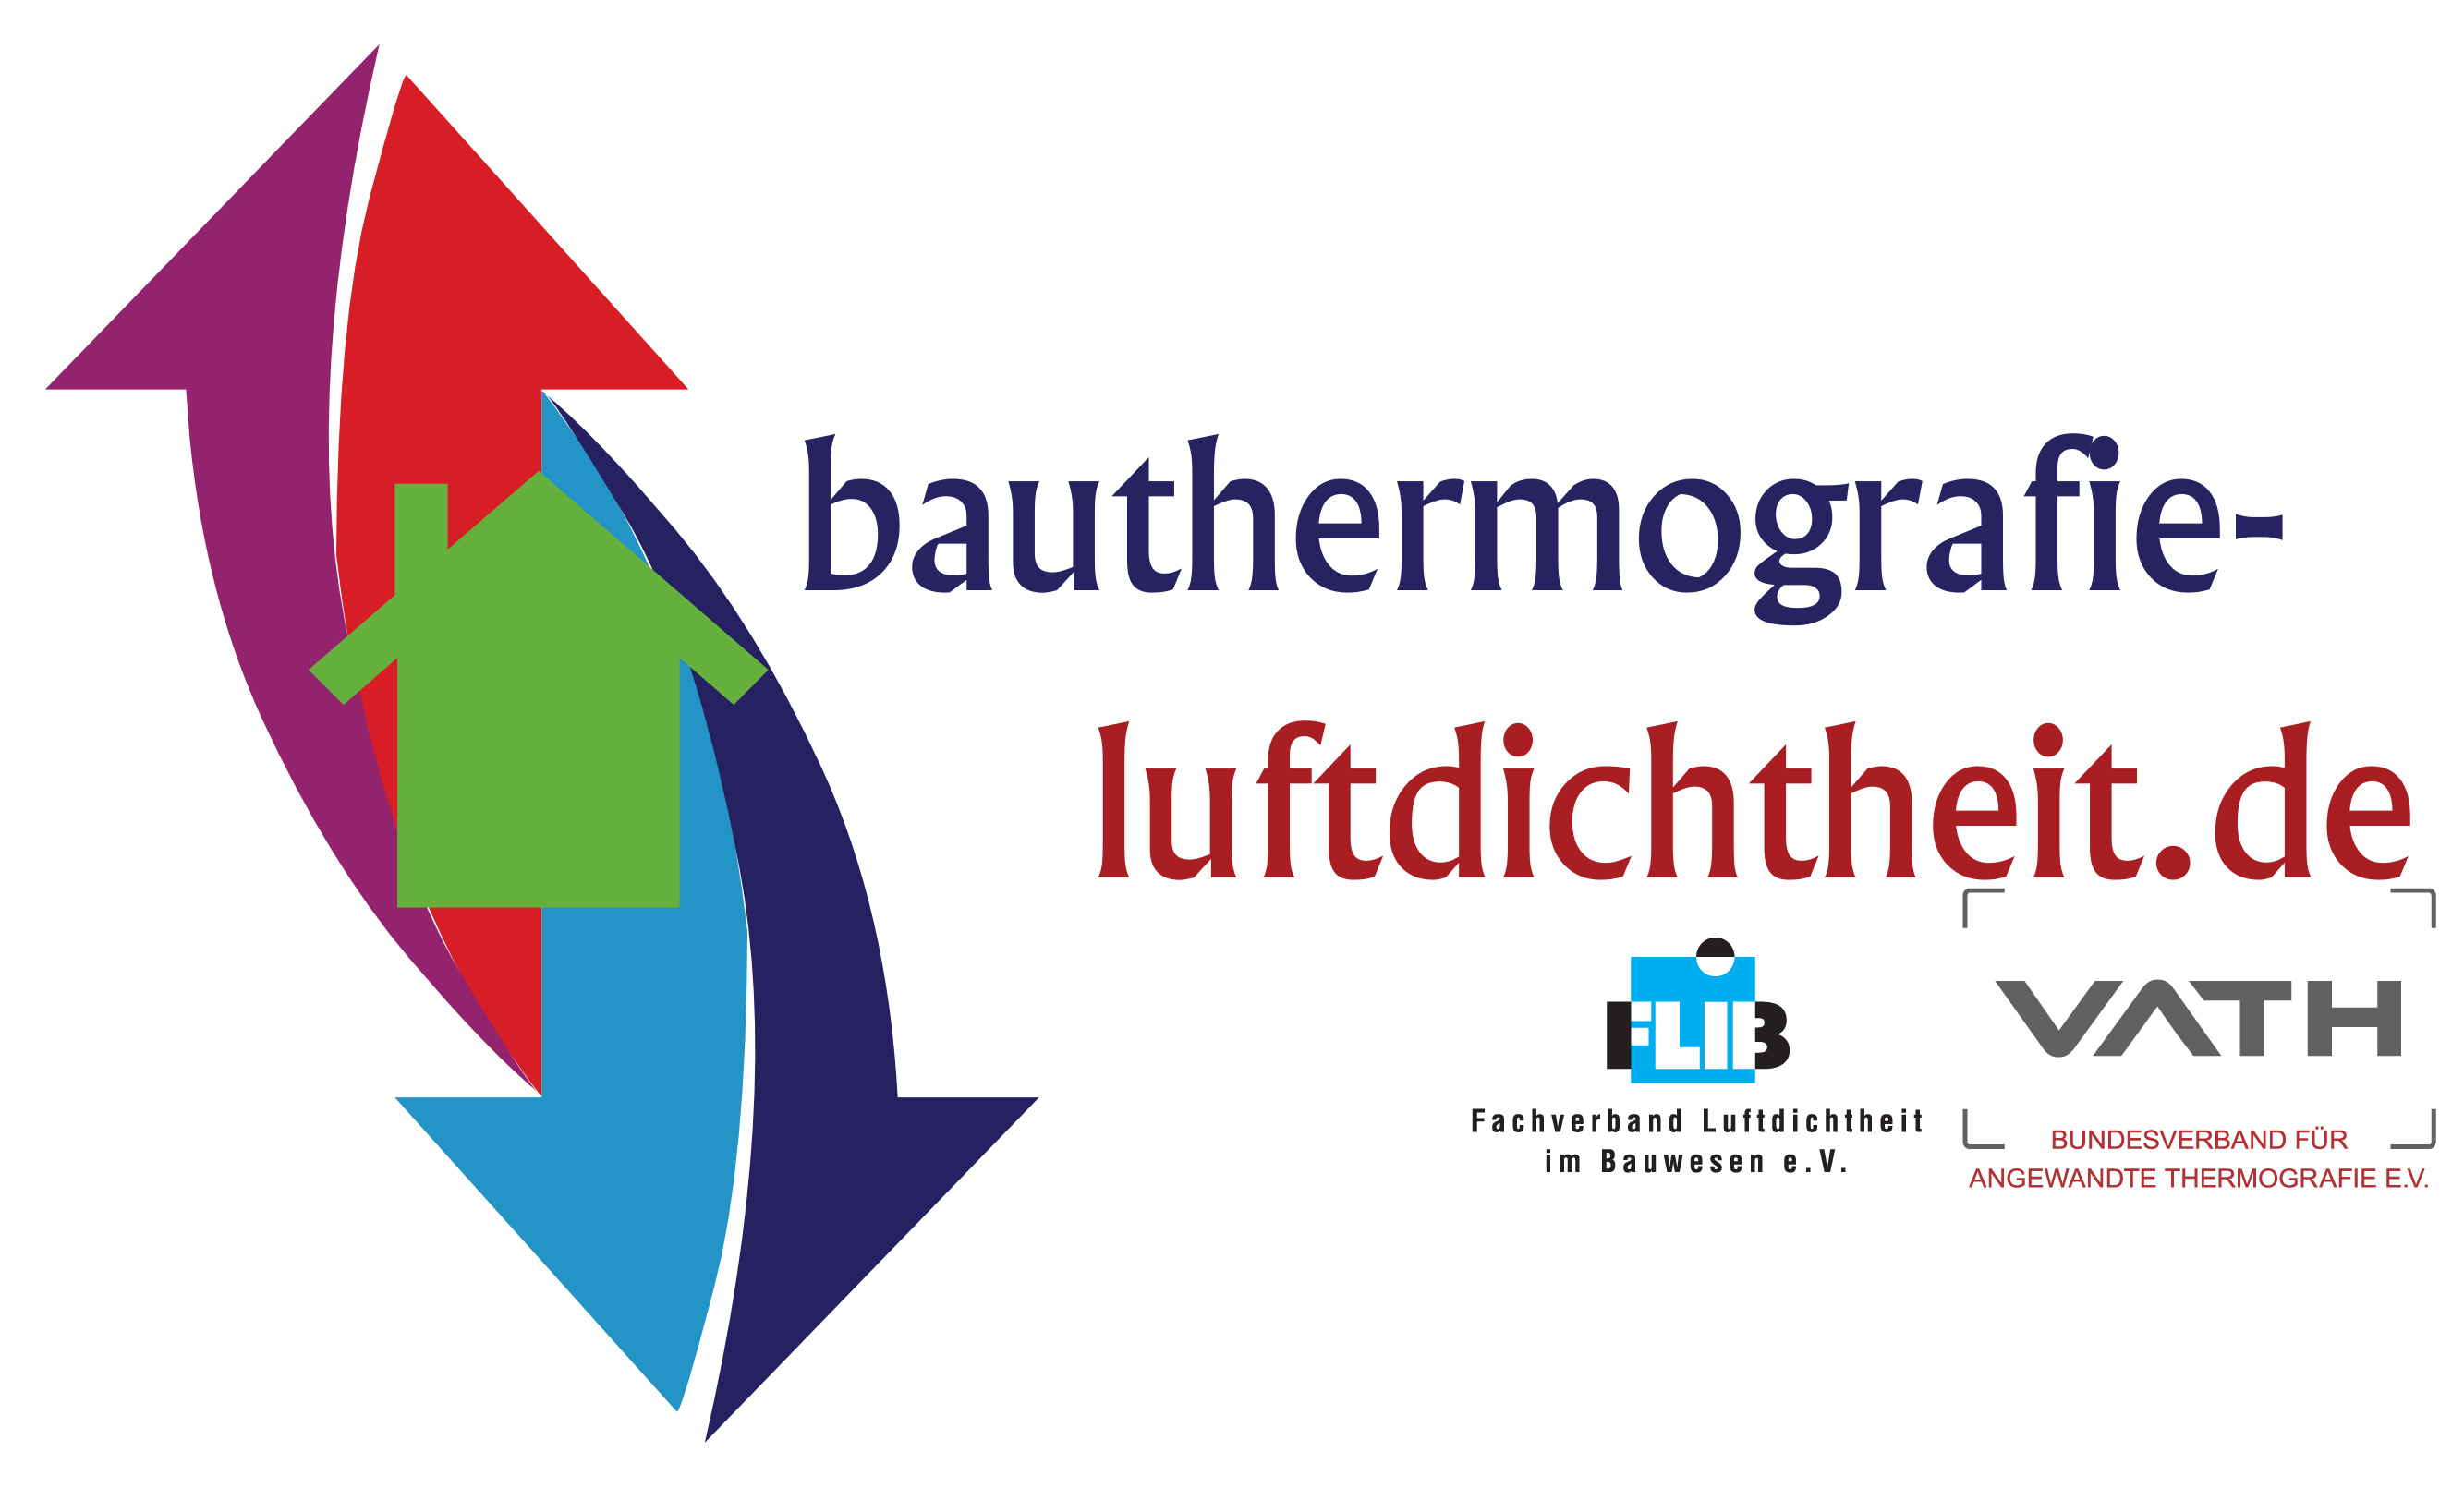 (c) Bauthermografie-luftdichtheit.de